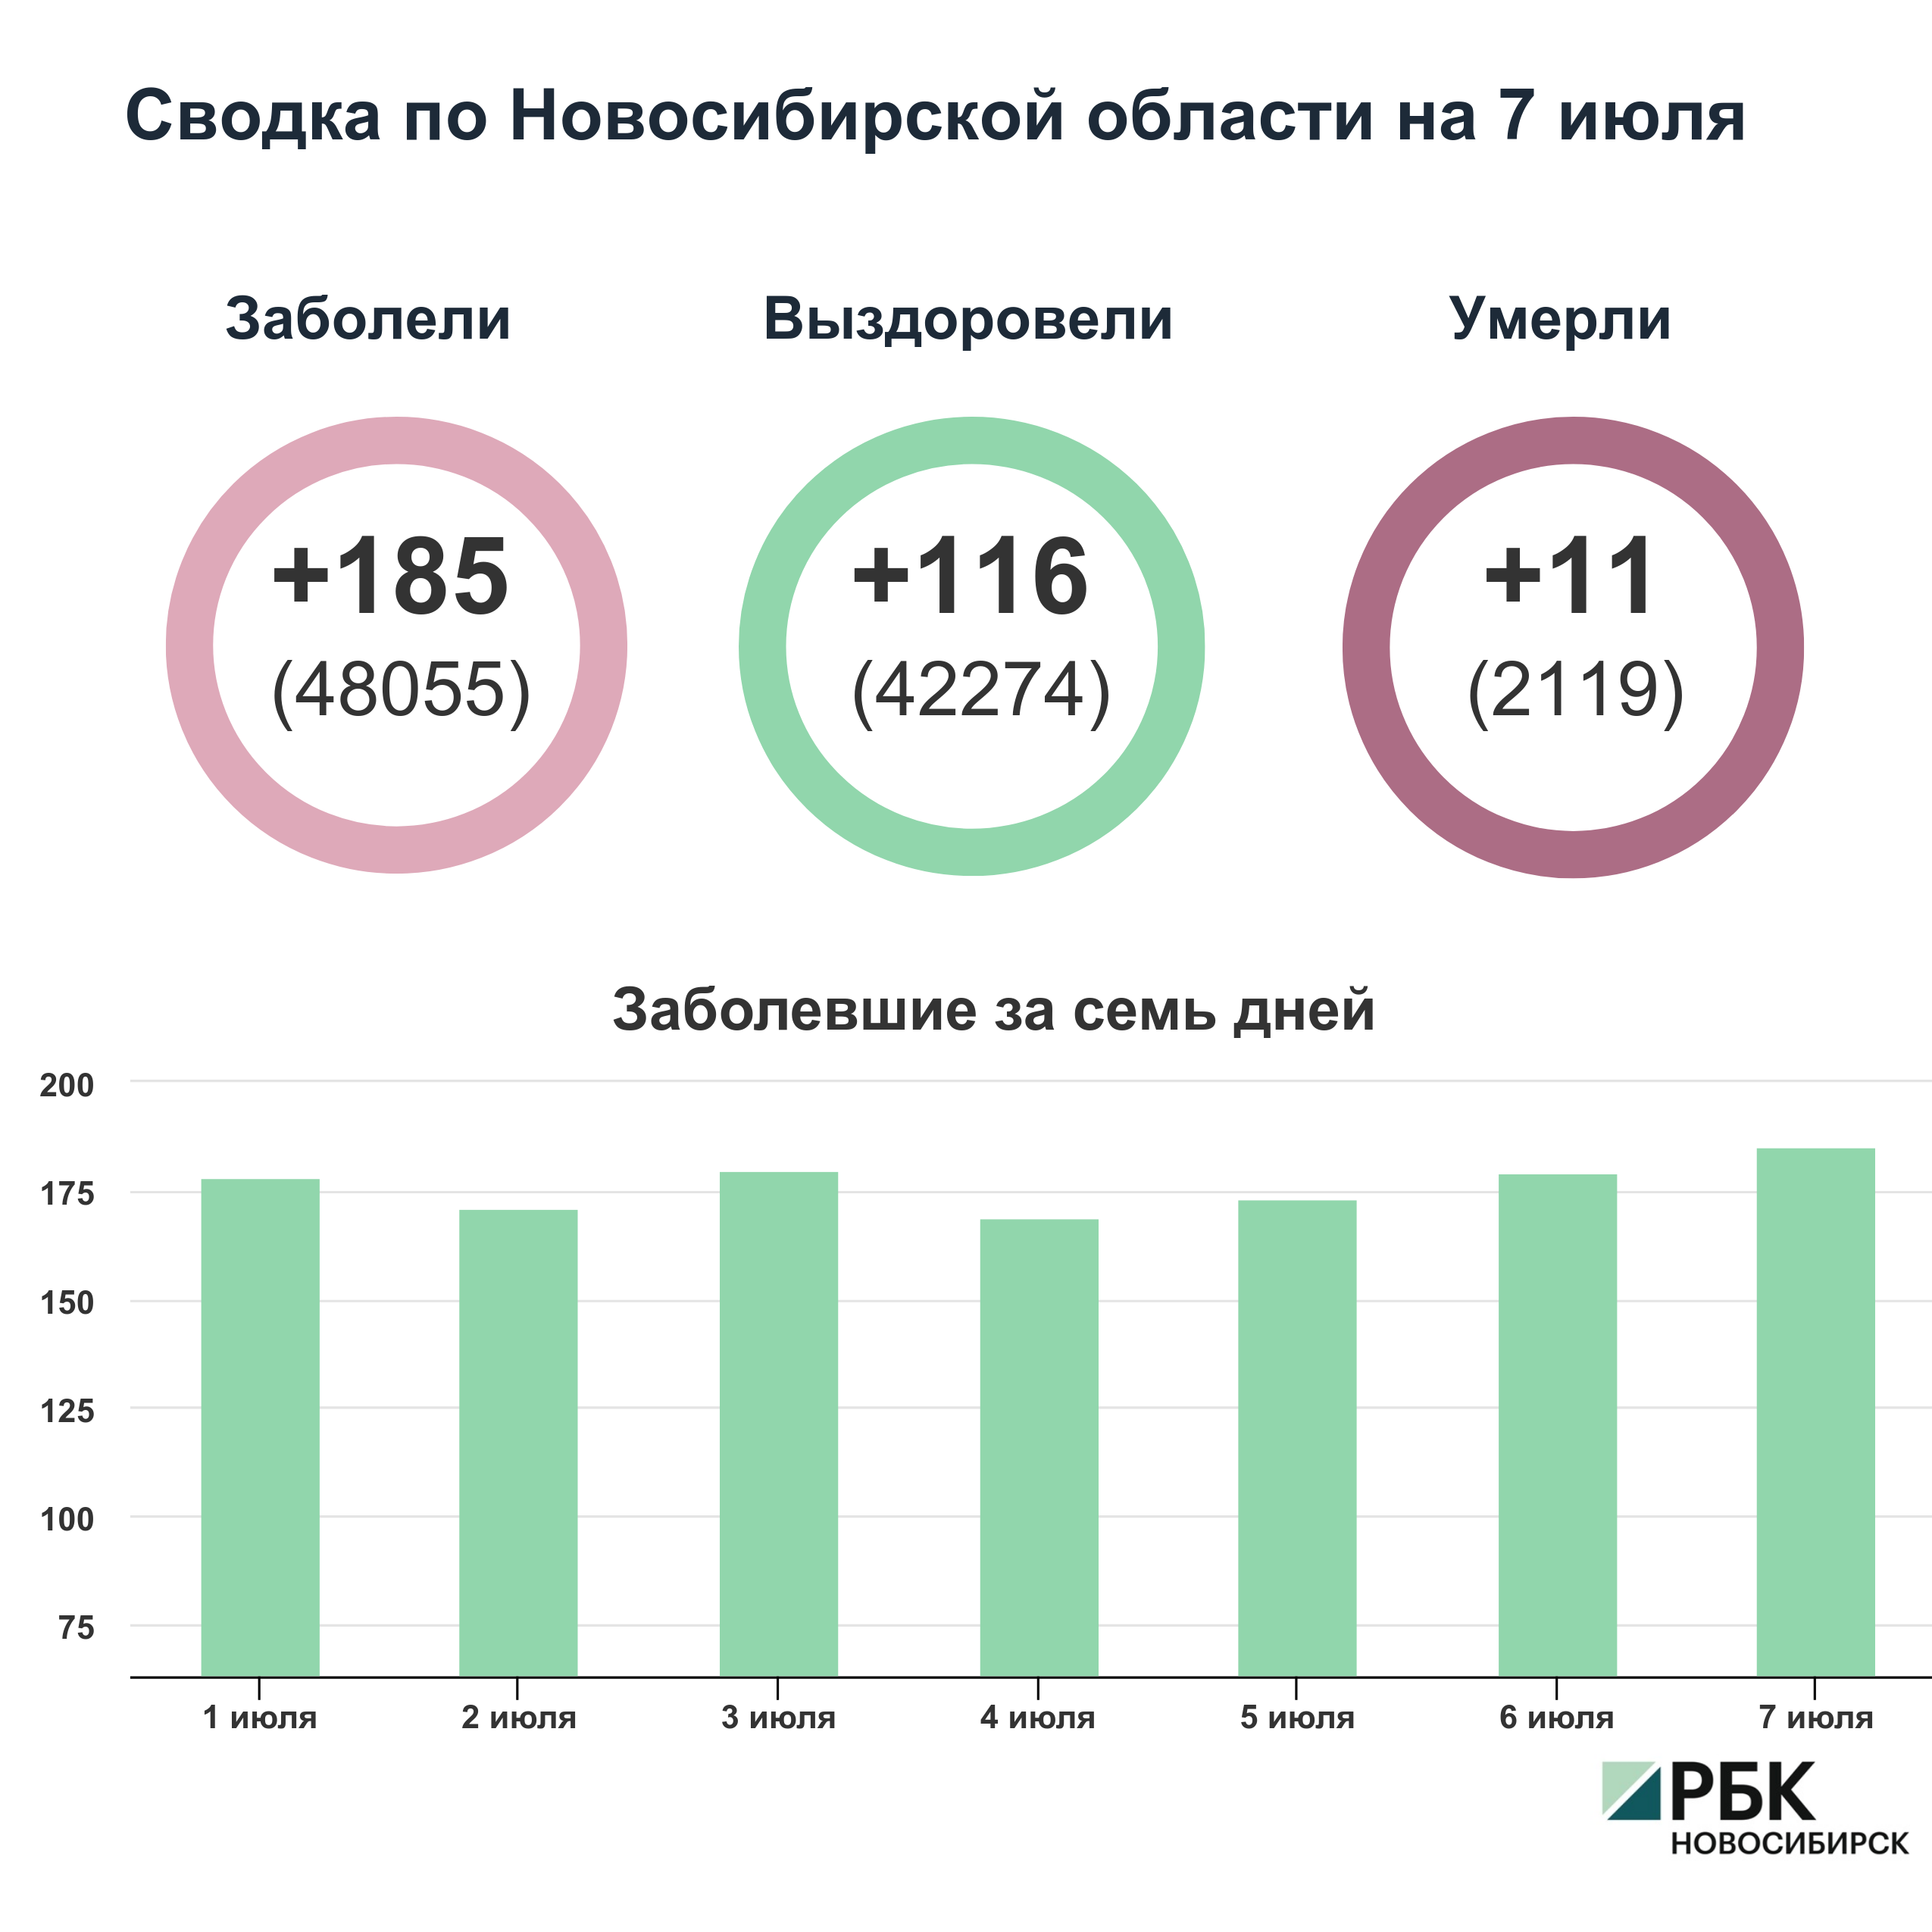 Коронавирус в Новосибирске: сводка на 7 июля